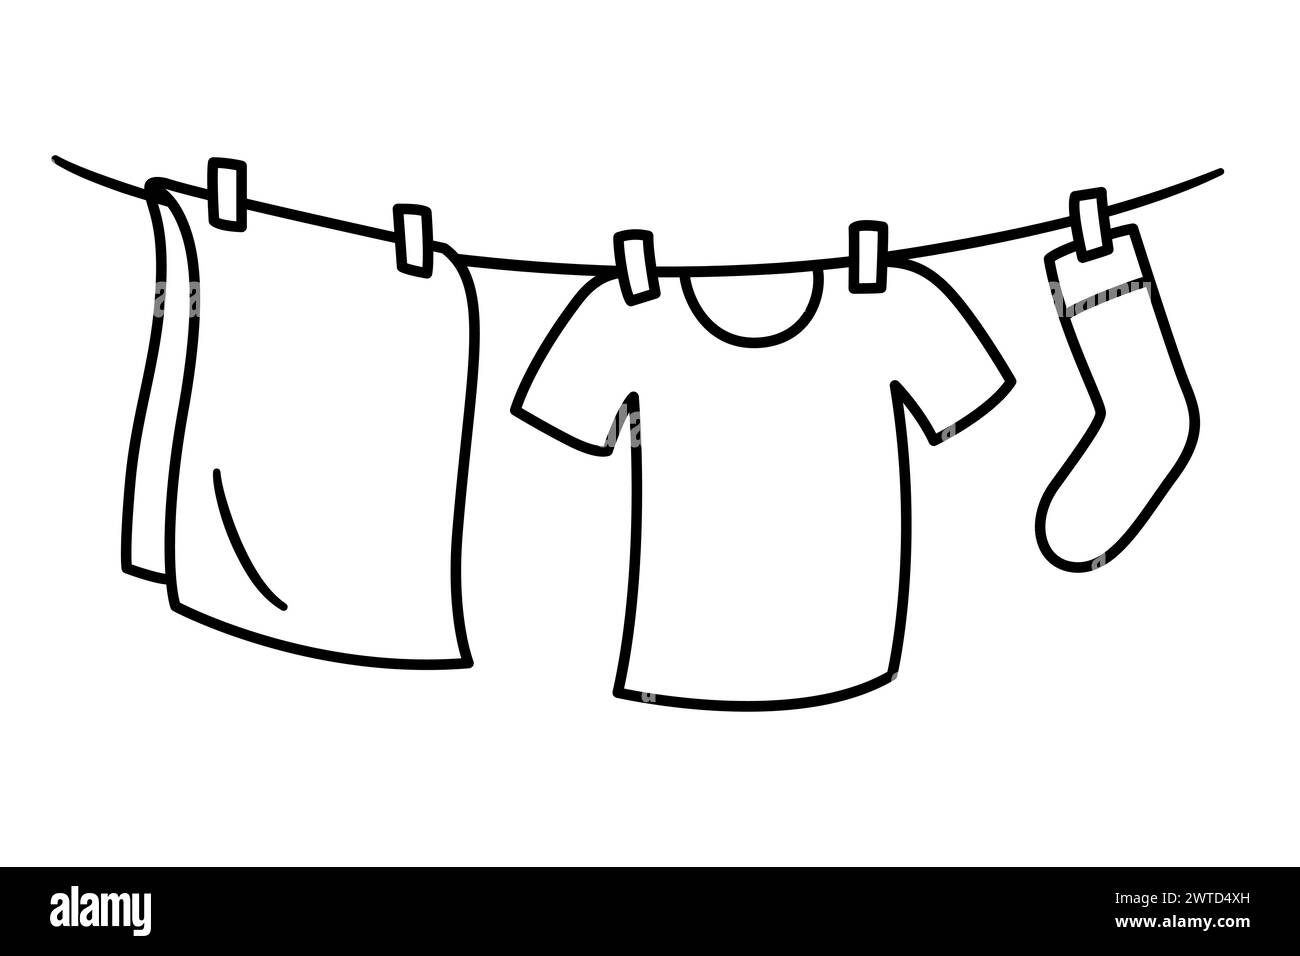 Kleidung hängt zum Trocknen auf der Wäscheleine, einfache Zeichentrickzeichnung. Schwarz-weiße Wäsche-Doodle-Symbol. Handgezeichnete Vektorgrafik. Stock Vektor